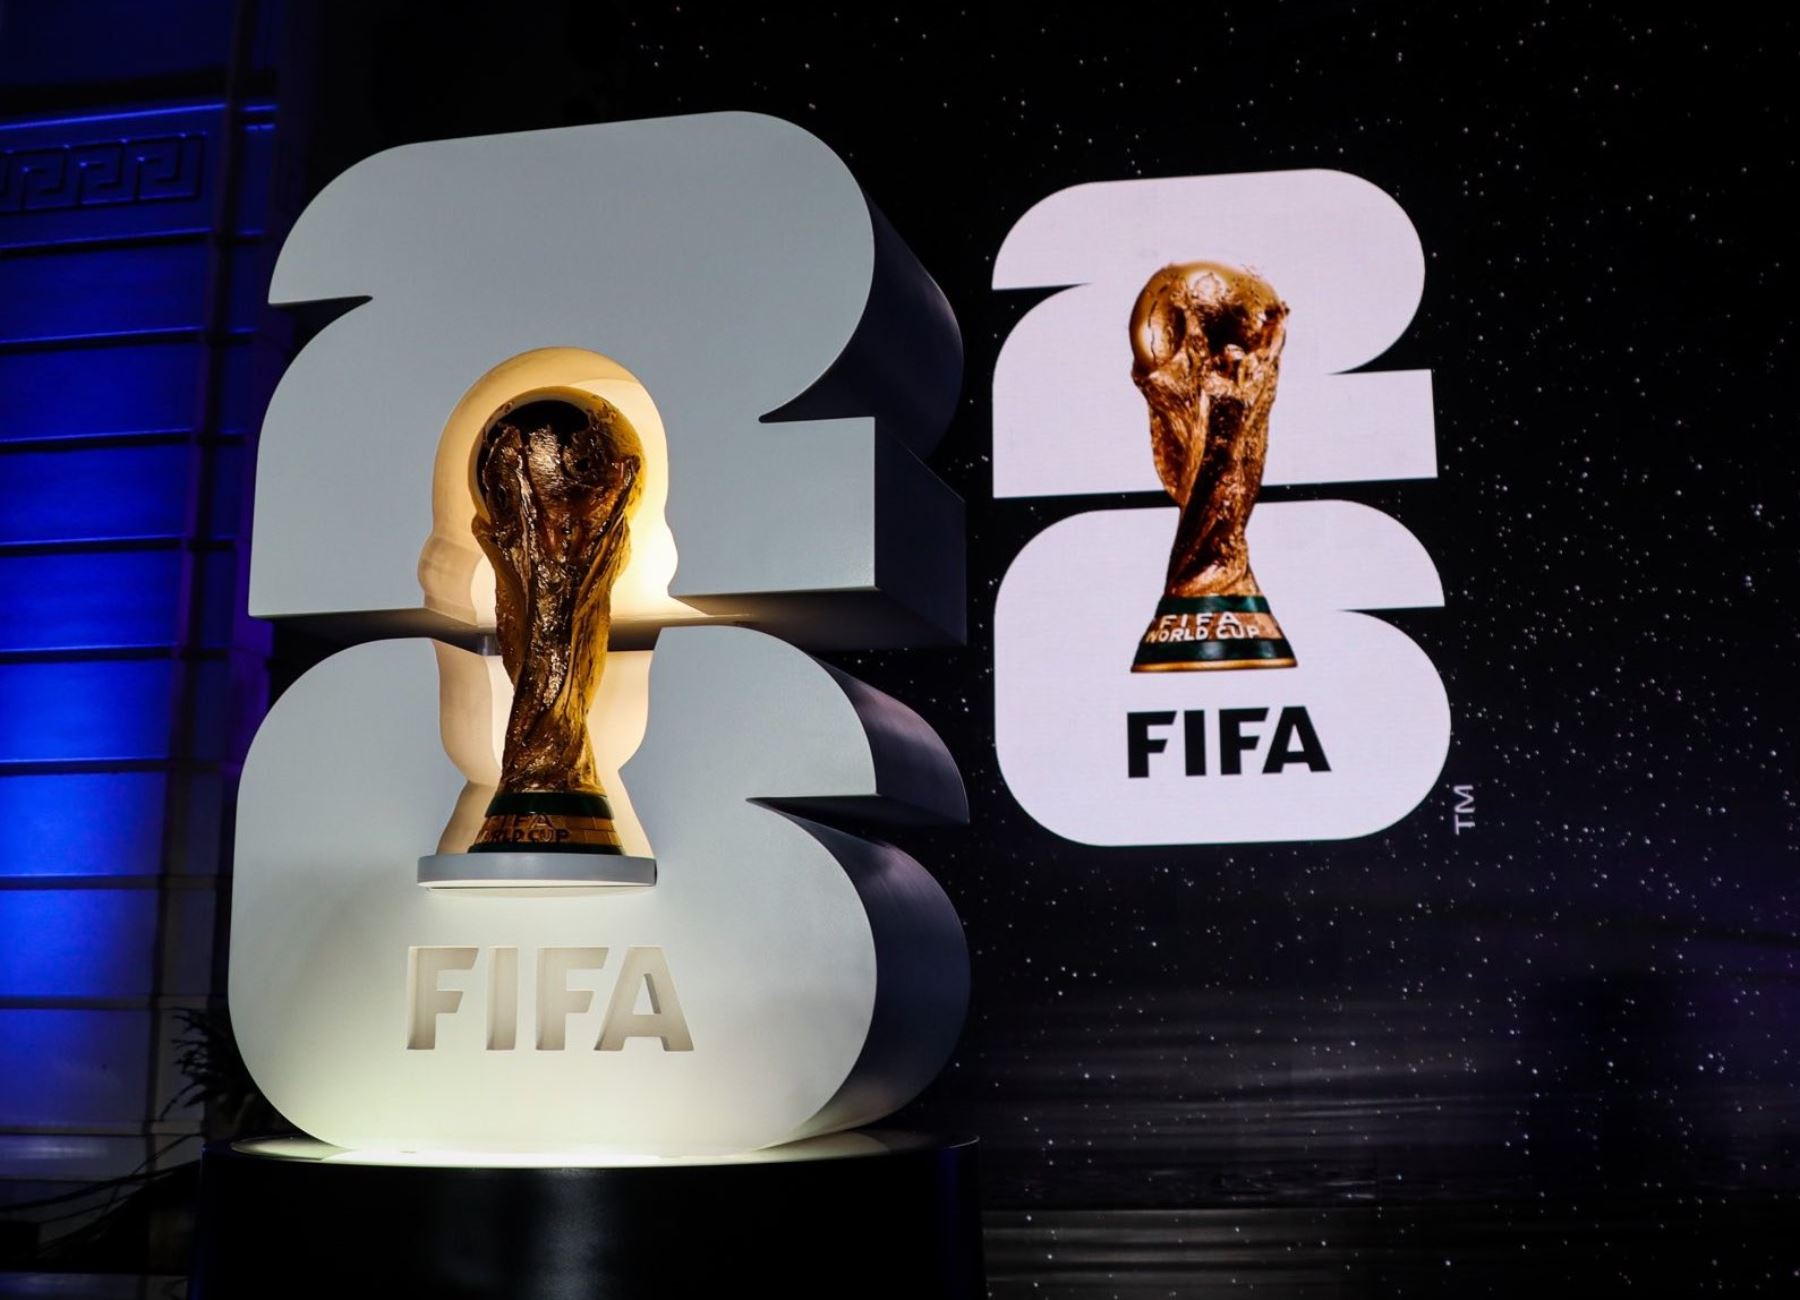 Mundial 2026: FIFA presentó el logo y la de la próxima Copa del Mundo | Noticias | Agencia Peruana Andina